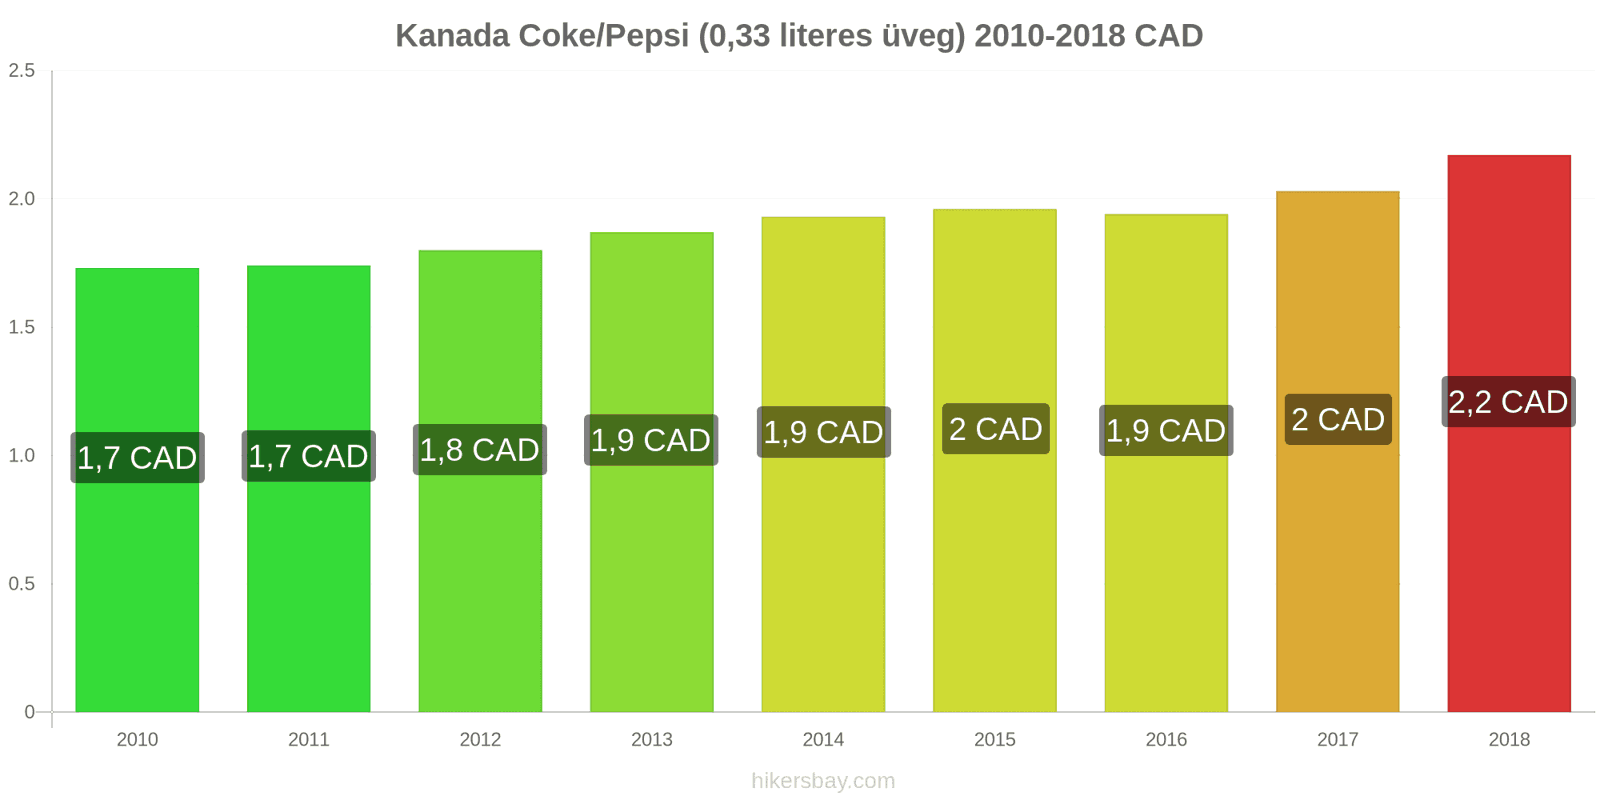 Kanada ár változások Coca-Cola/Pepsi (0.33 literes üveg) hikersbay.com